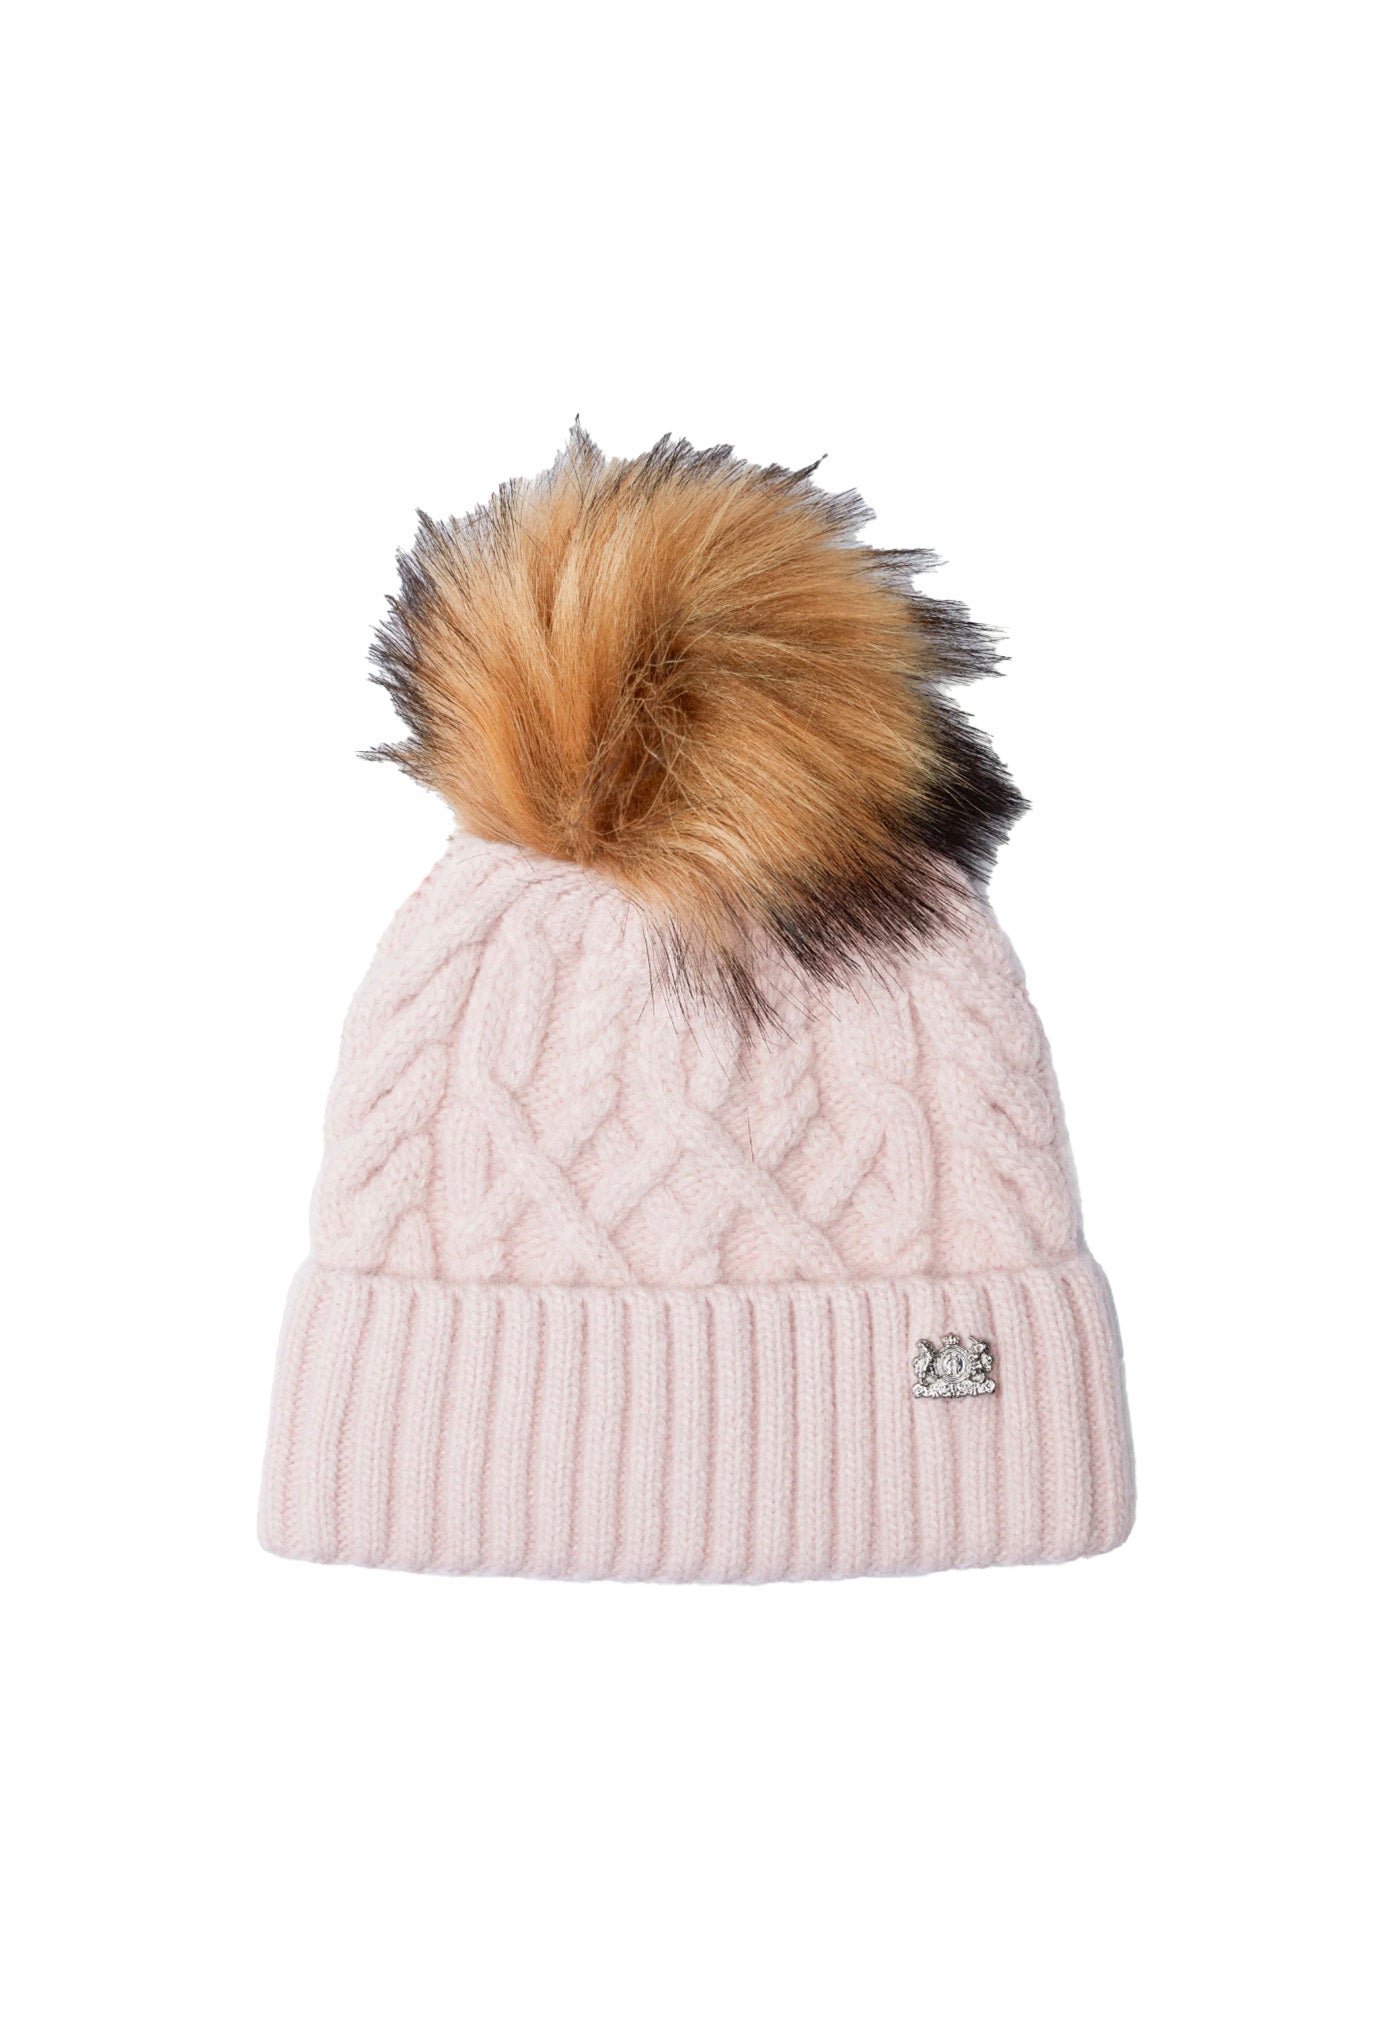 Windsor Bobble Hat - Soft Pink sold by Angel Divine